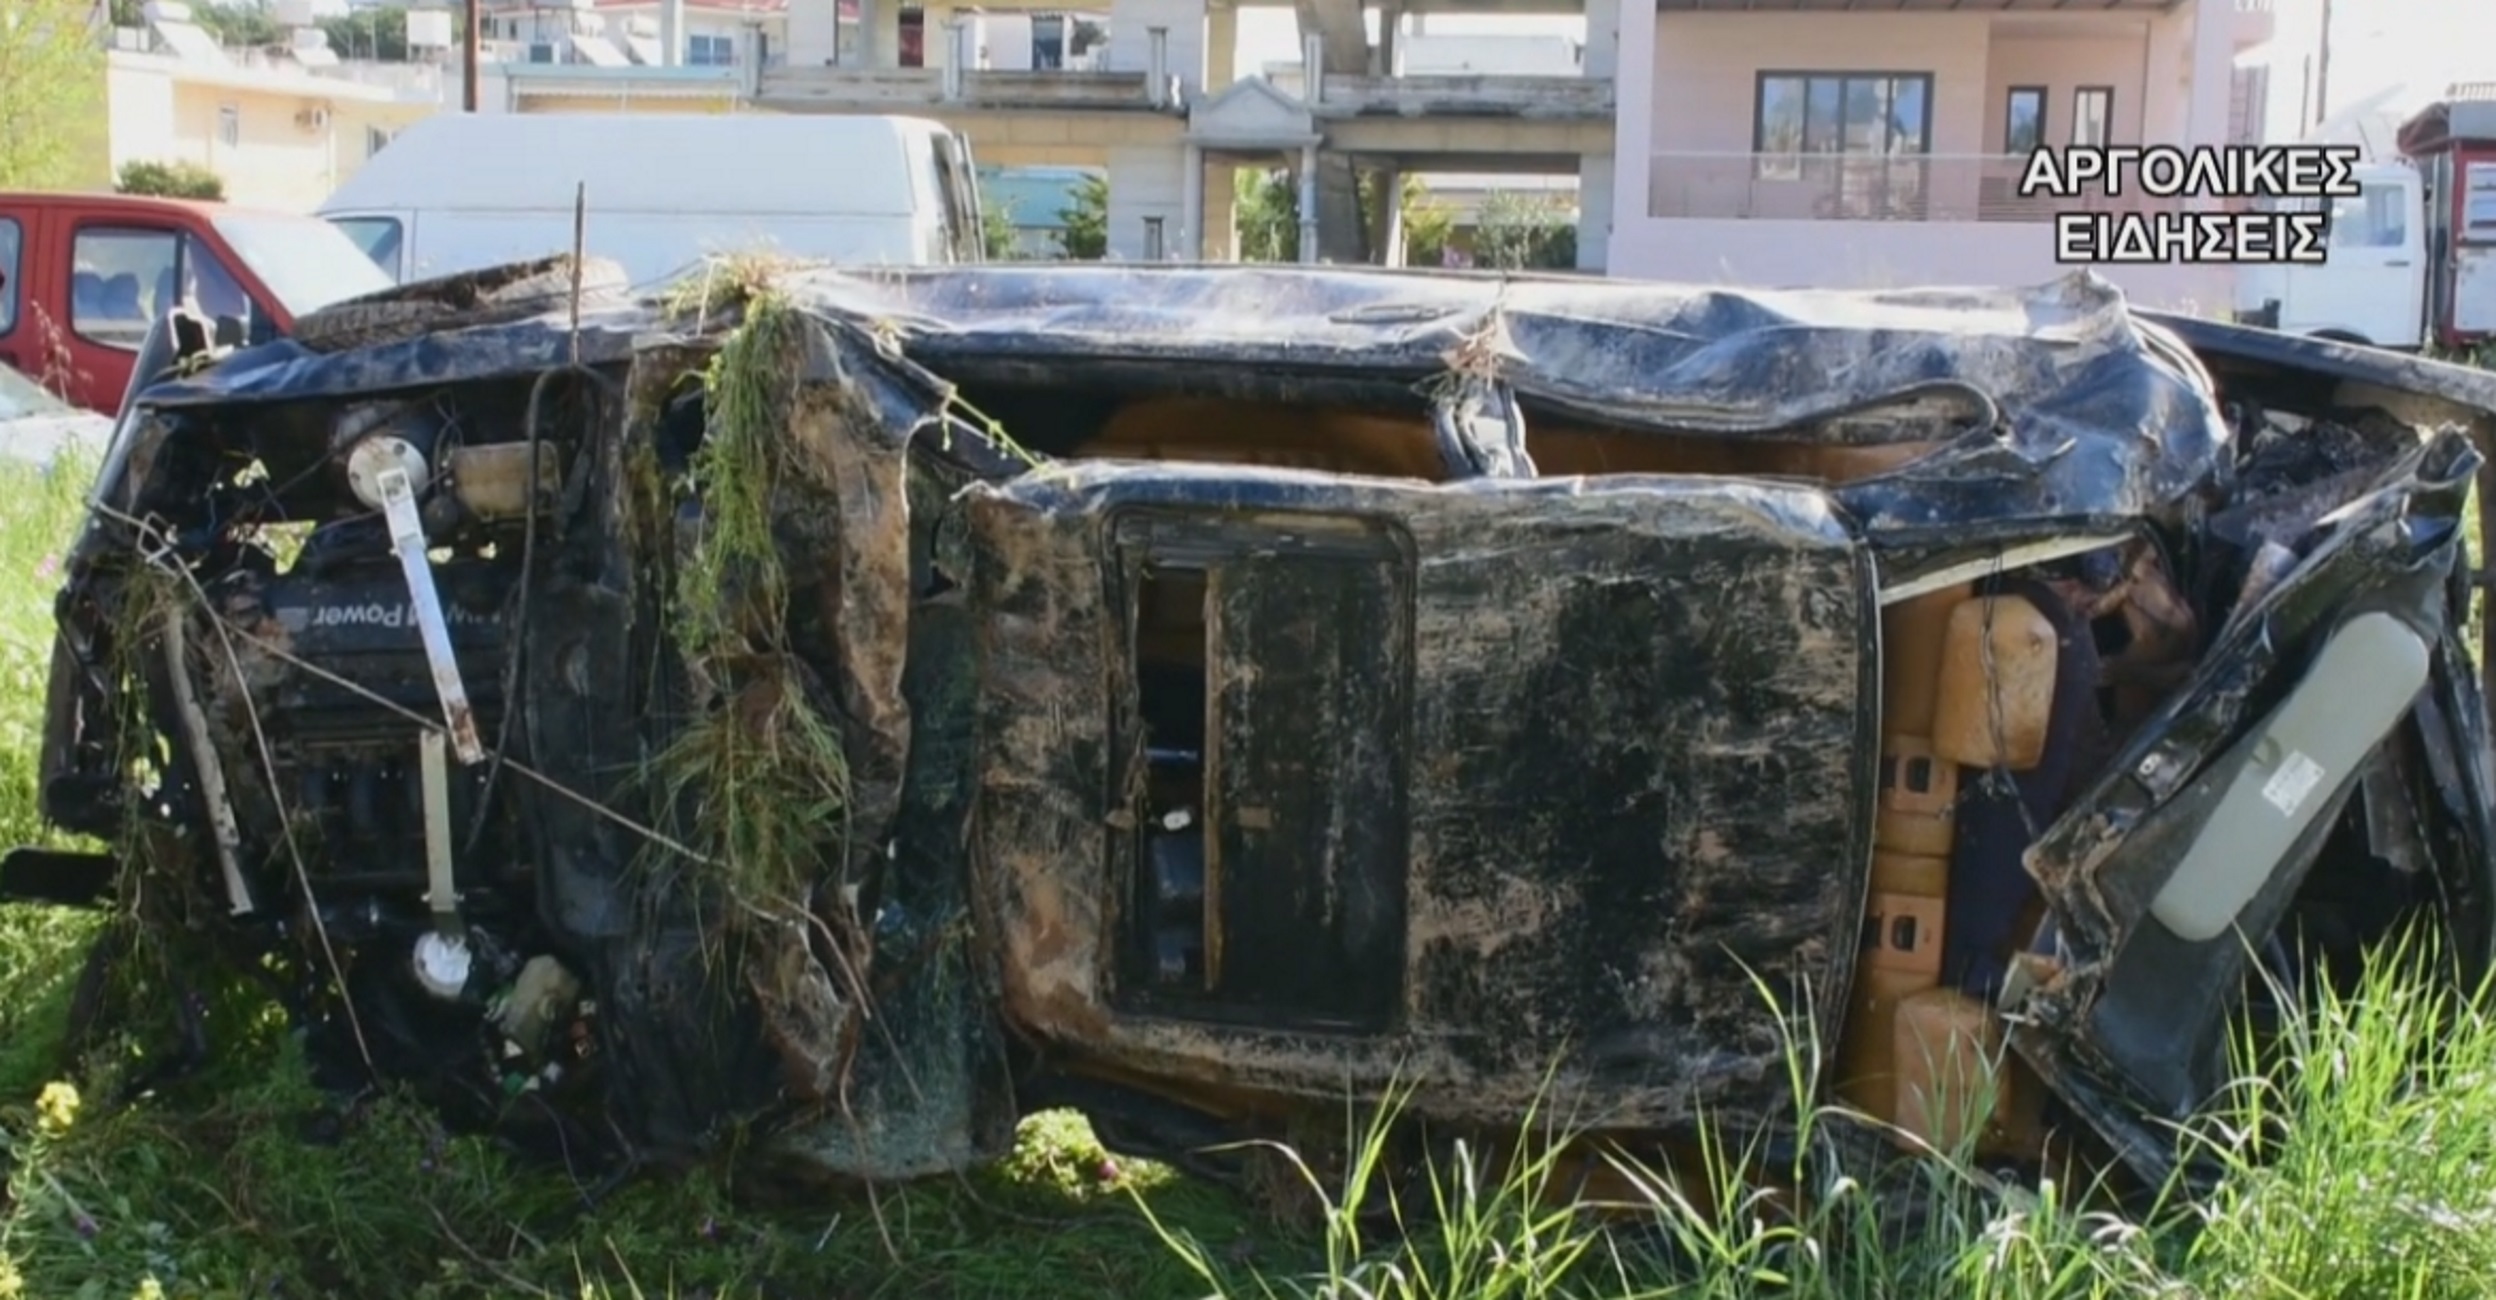 Σκοτώθηκε σε φοβερό τροχαίο 20χρονη κοπέλα στο Ναύπλιο – Σοκάρουν οι εικόνες μετά το δυστύχημα